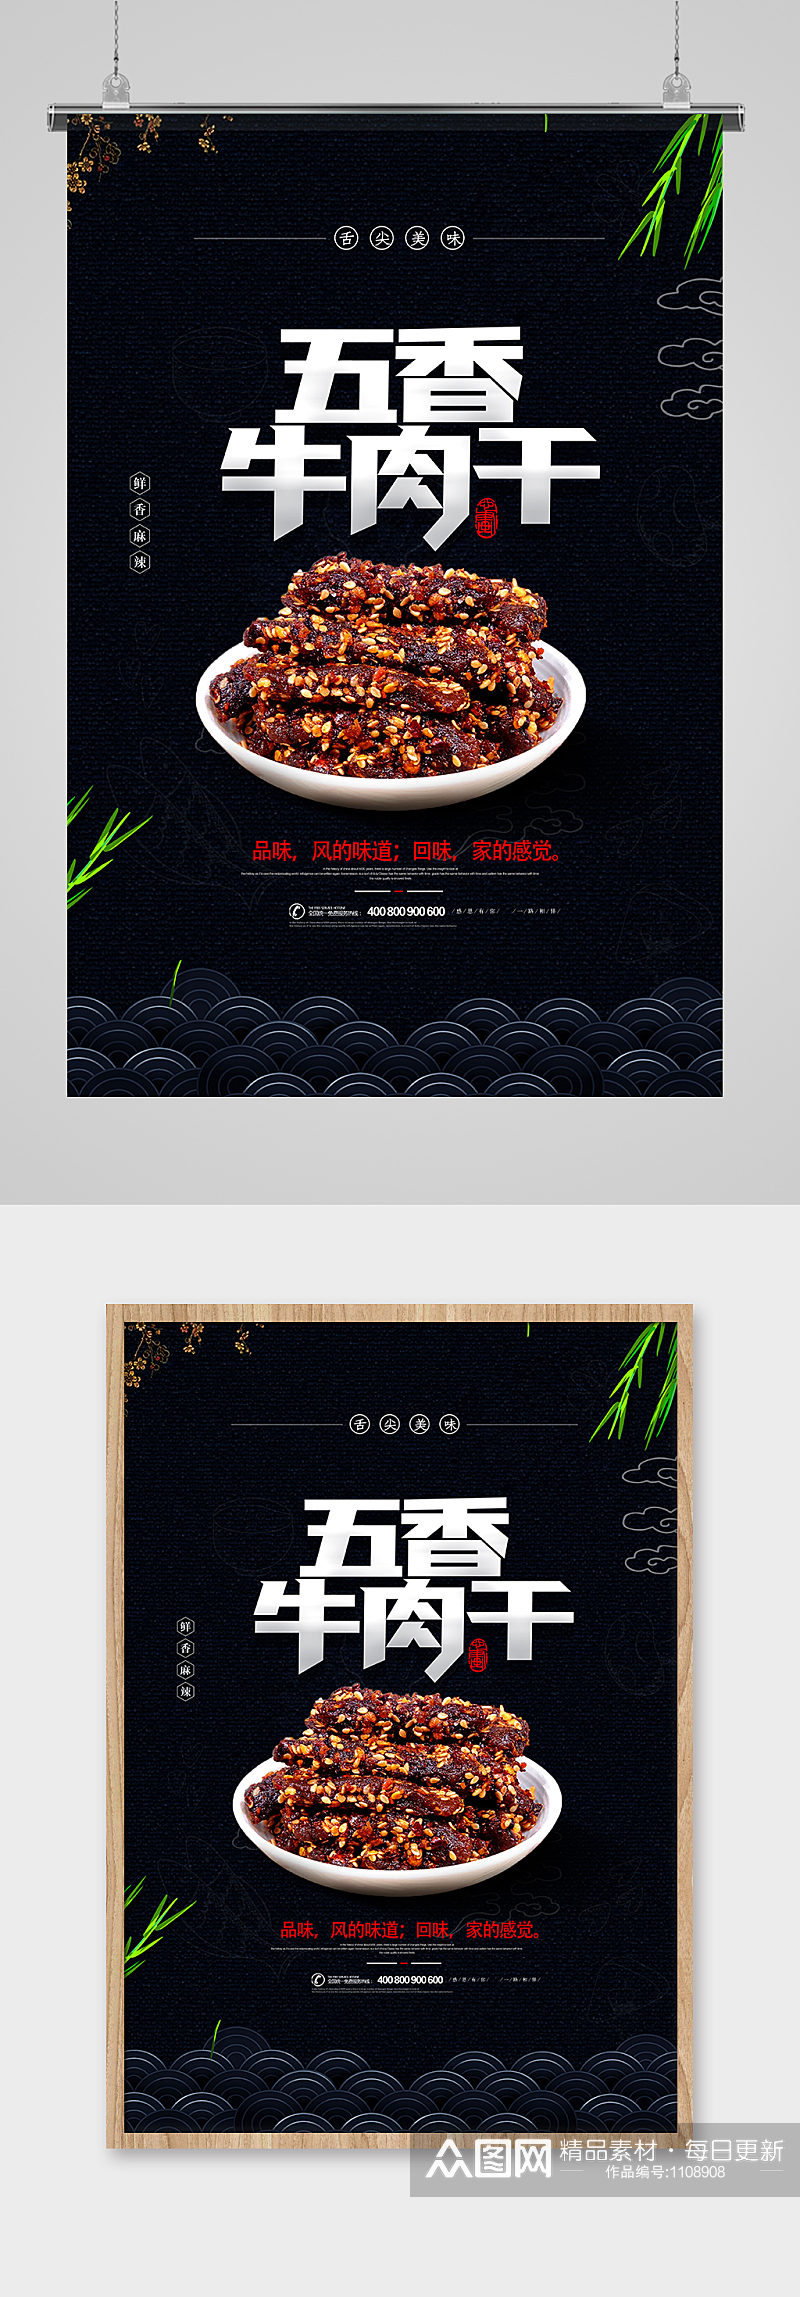 创意传统五香牛肉干美食海报设计素材